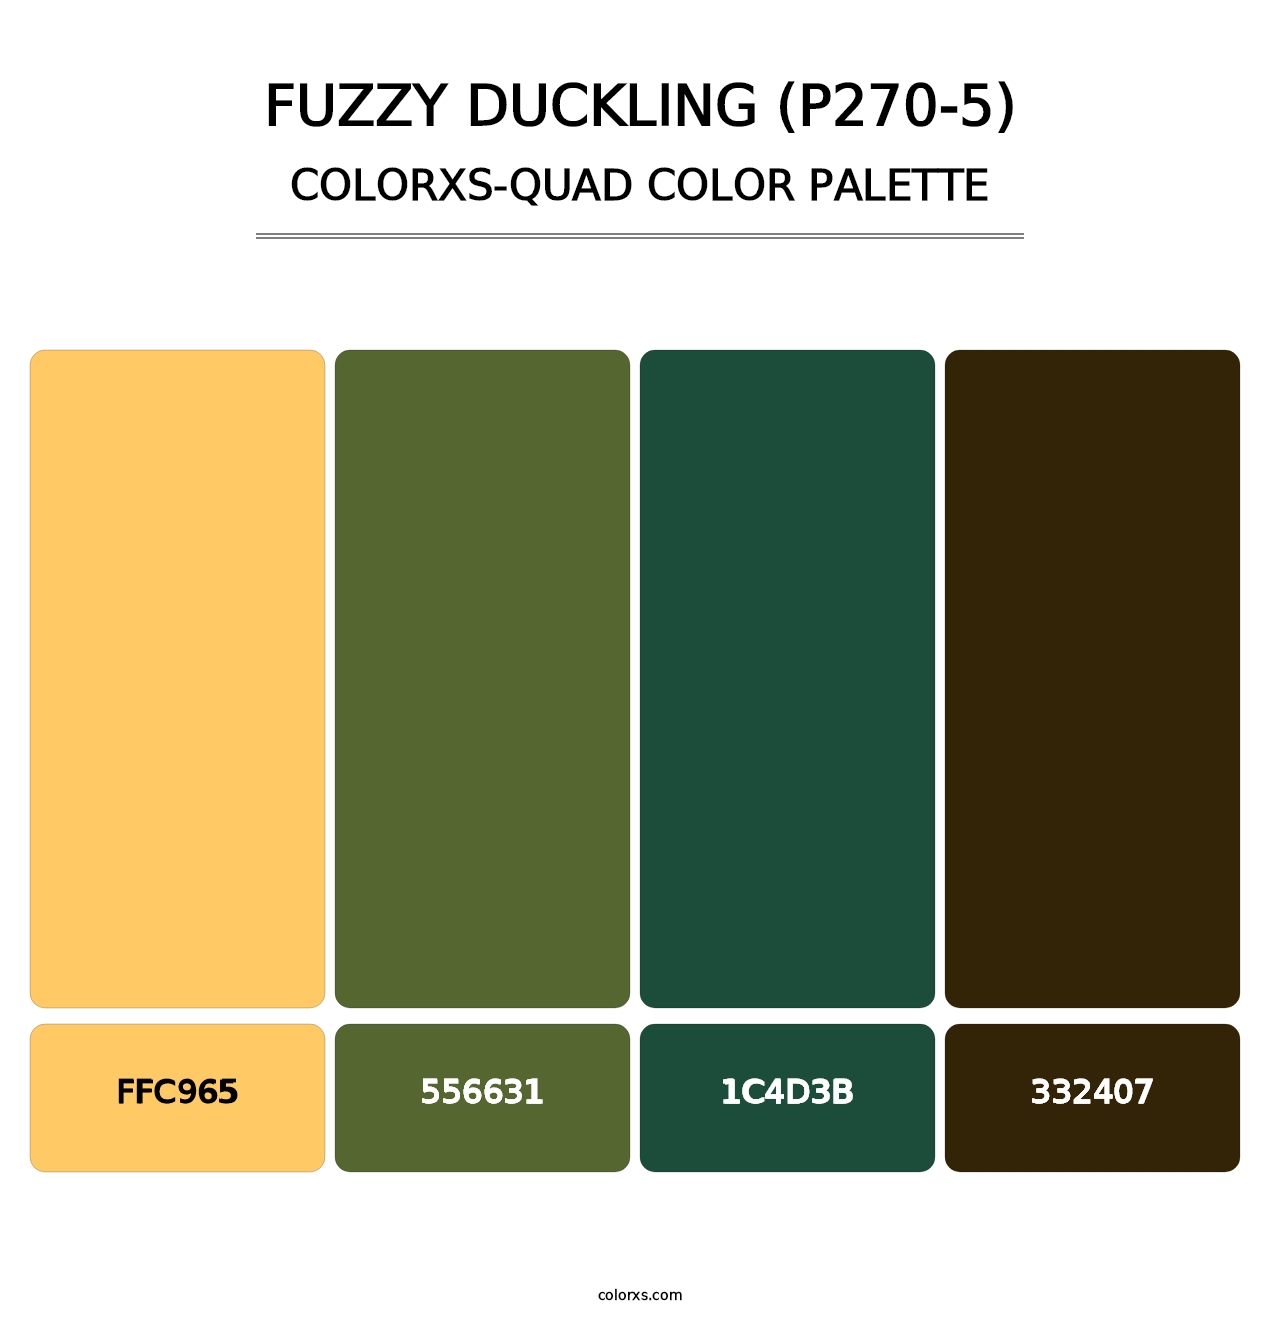 Fuzzy Duckling (P270-5) - Colorxs Quad Palette